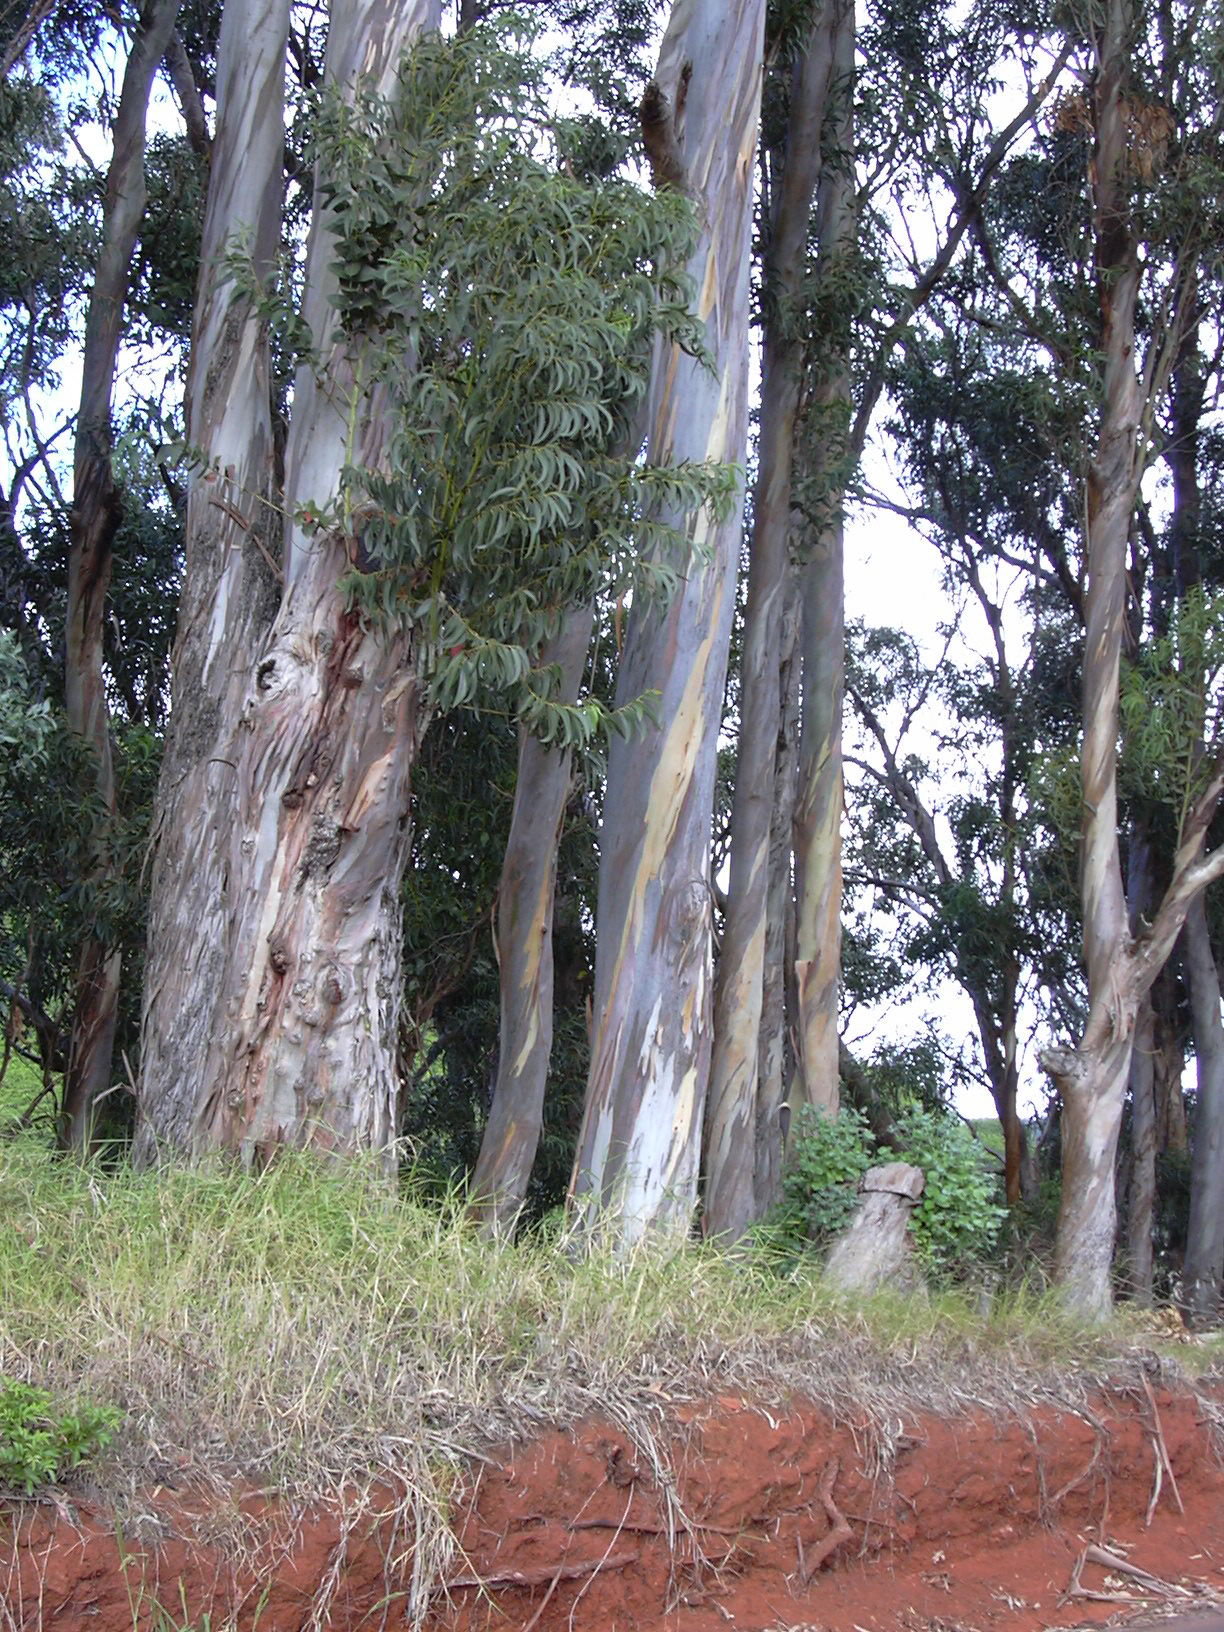 lots of whooshing eucalyptuses